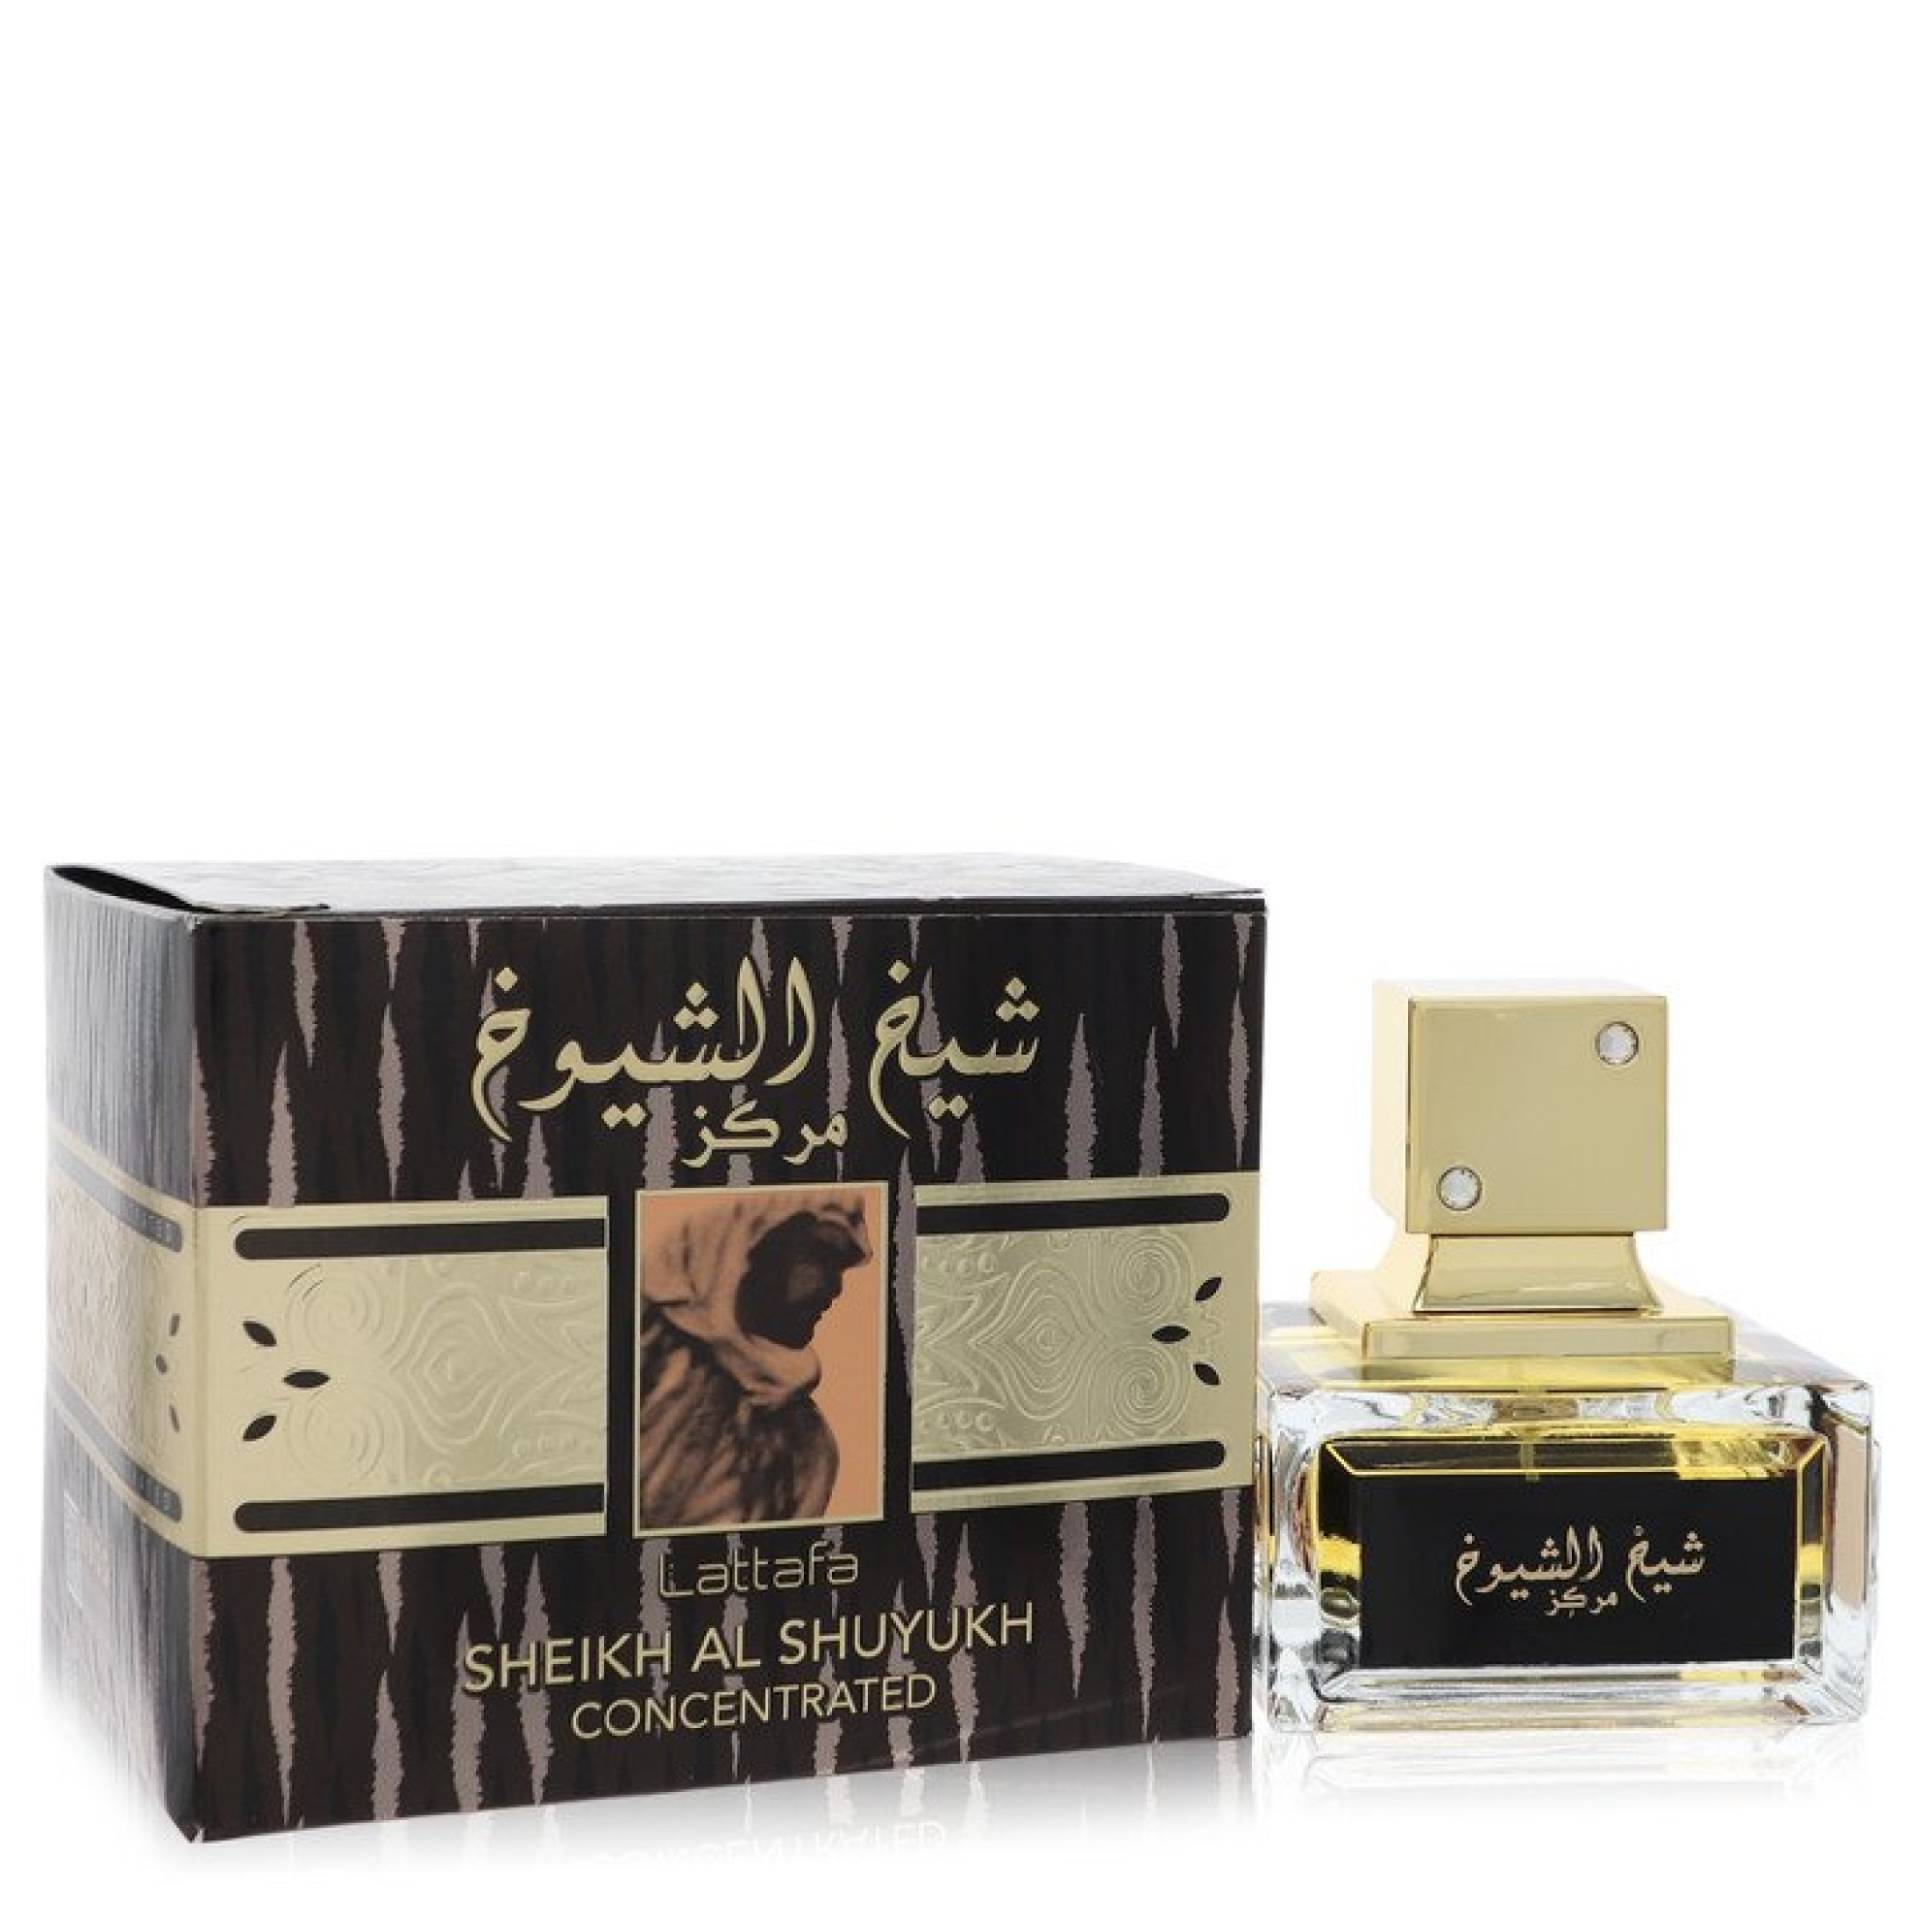 Lattafa Sheikh Al Shuyukh Eau De Parfum Spray Concentrated (Unisex) 101 ml von Lattafa